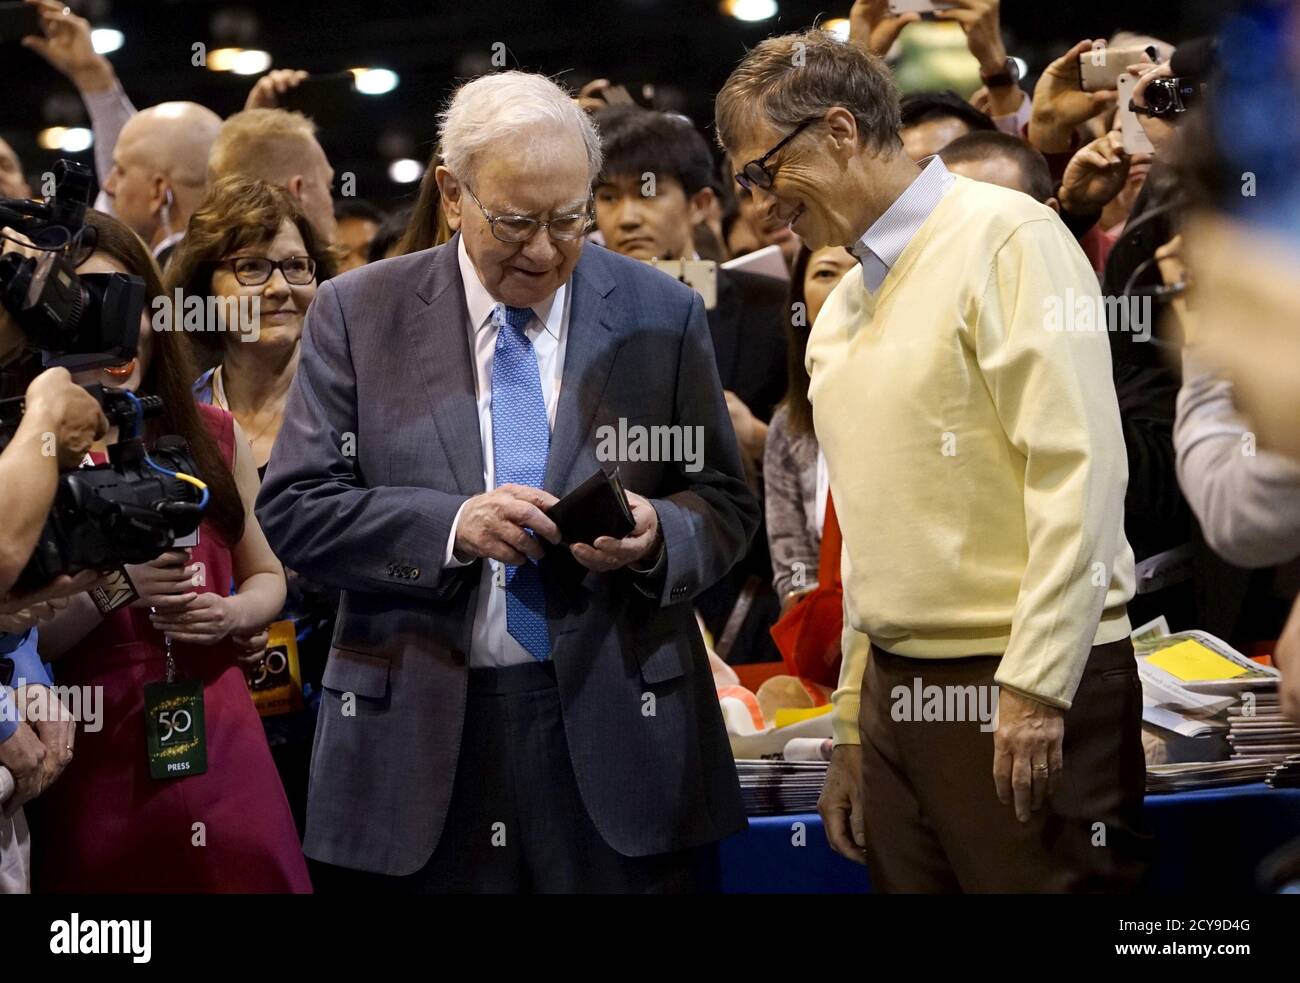 Warren Buffett (L), CEO de Berkshire Hathaway, obtiene su cartera para pagar una apuesta al co-fundador de Microsoft Bill Gates después de participar en un concurso de lanzamiento de periódicos antes de la reunión anual de Berkshire en Omaha, Nebraska, 2 de mayo de 2015. REUTERS/Rick Wilking Foto de stock